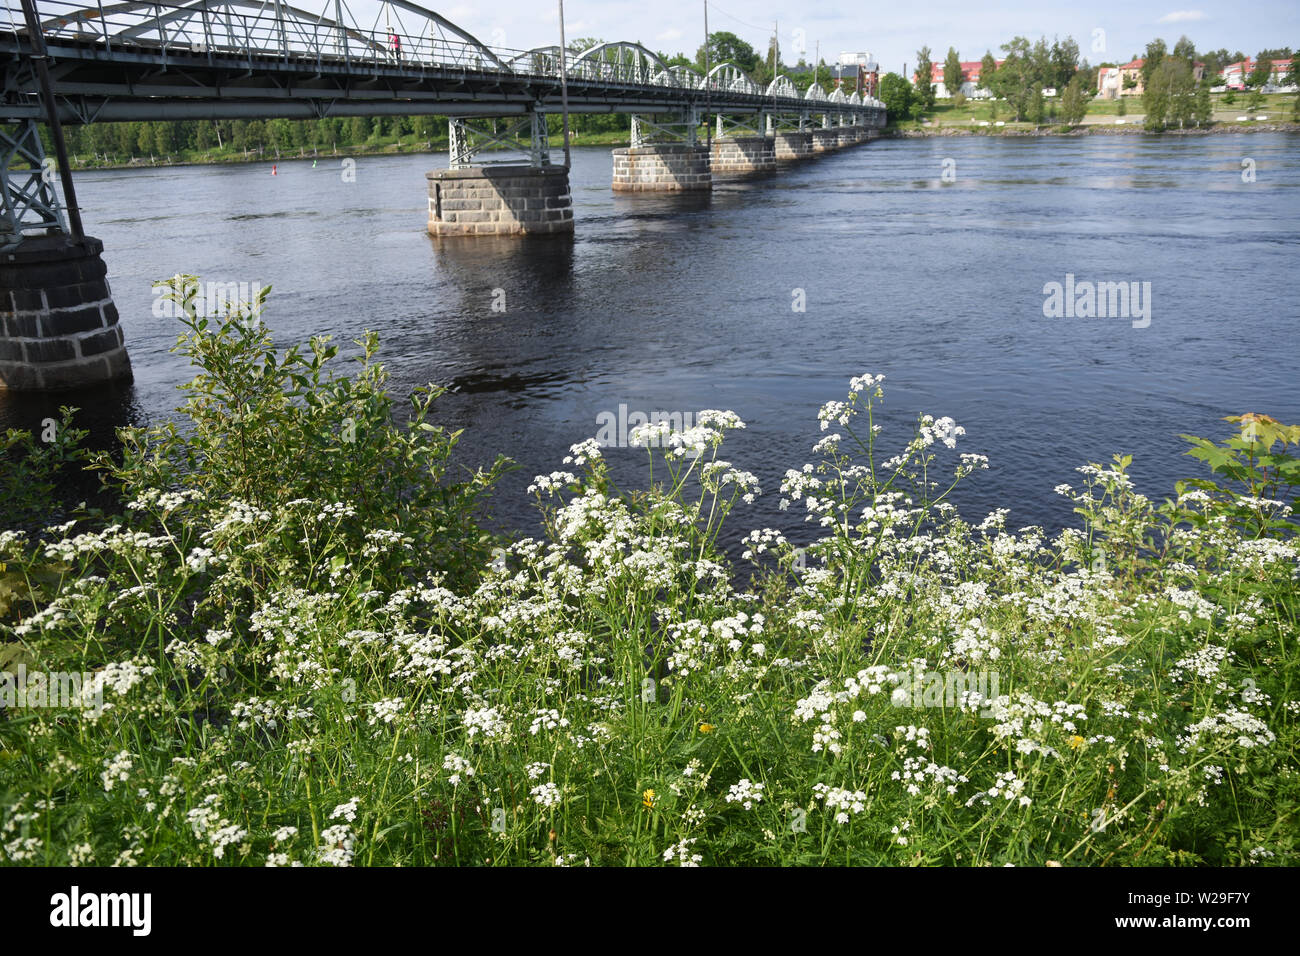 Gamla Bron, a pedestrian bridge in Umeå, northern Sweden Stock Photo